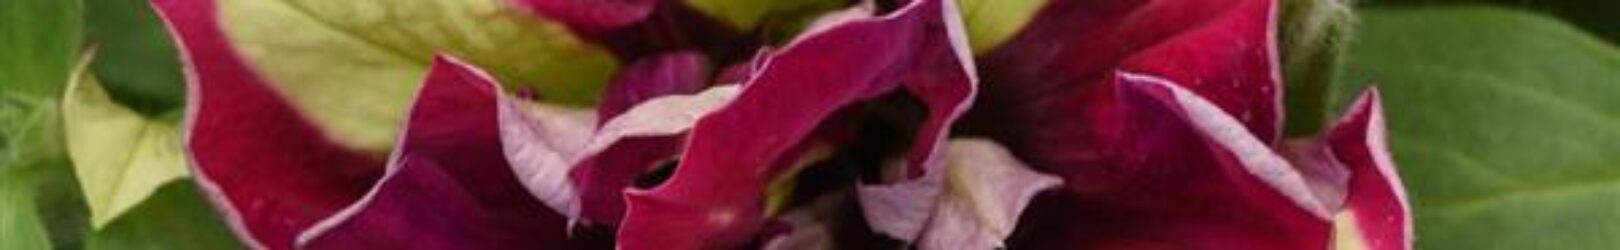 Geranium Sunrise Bright Lilac